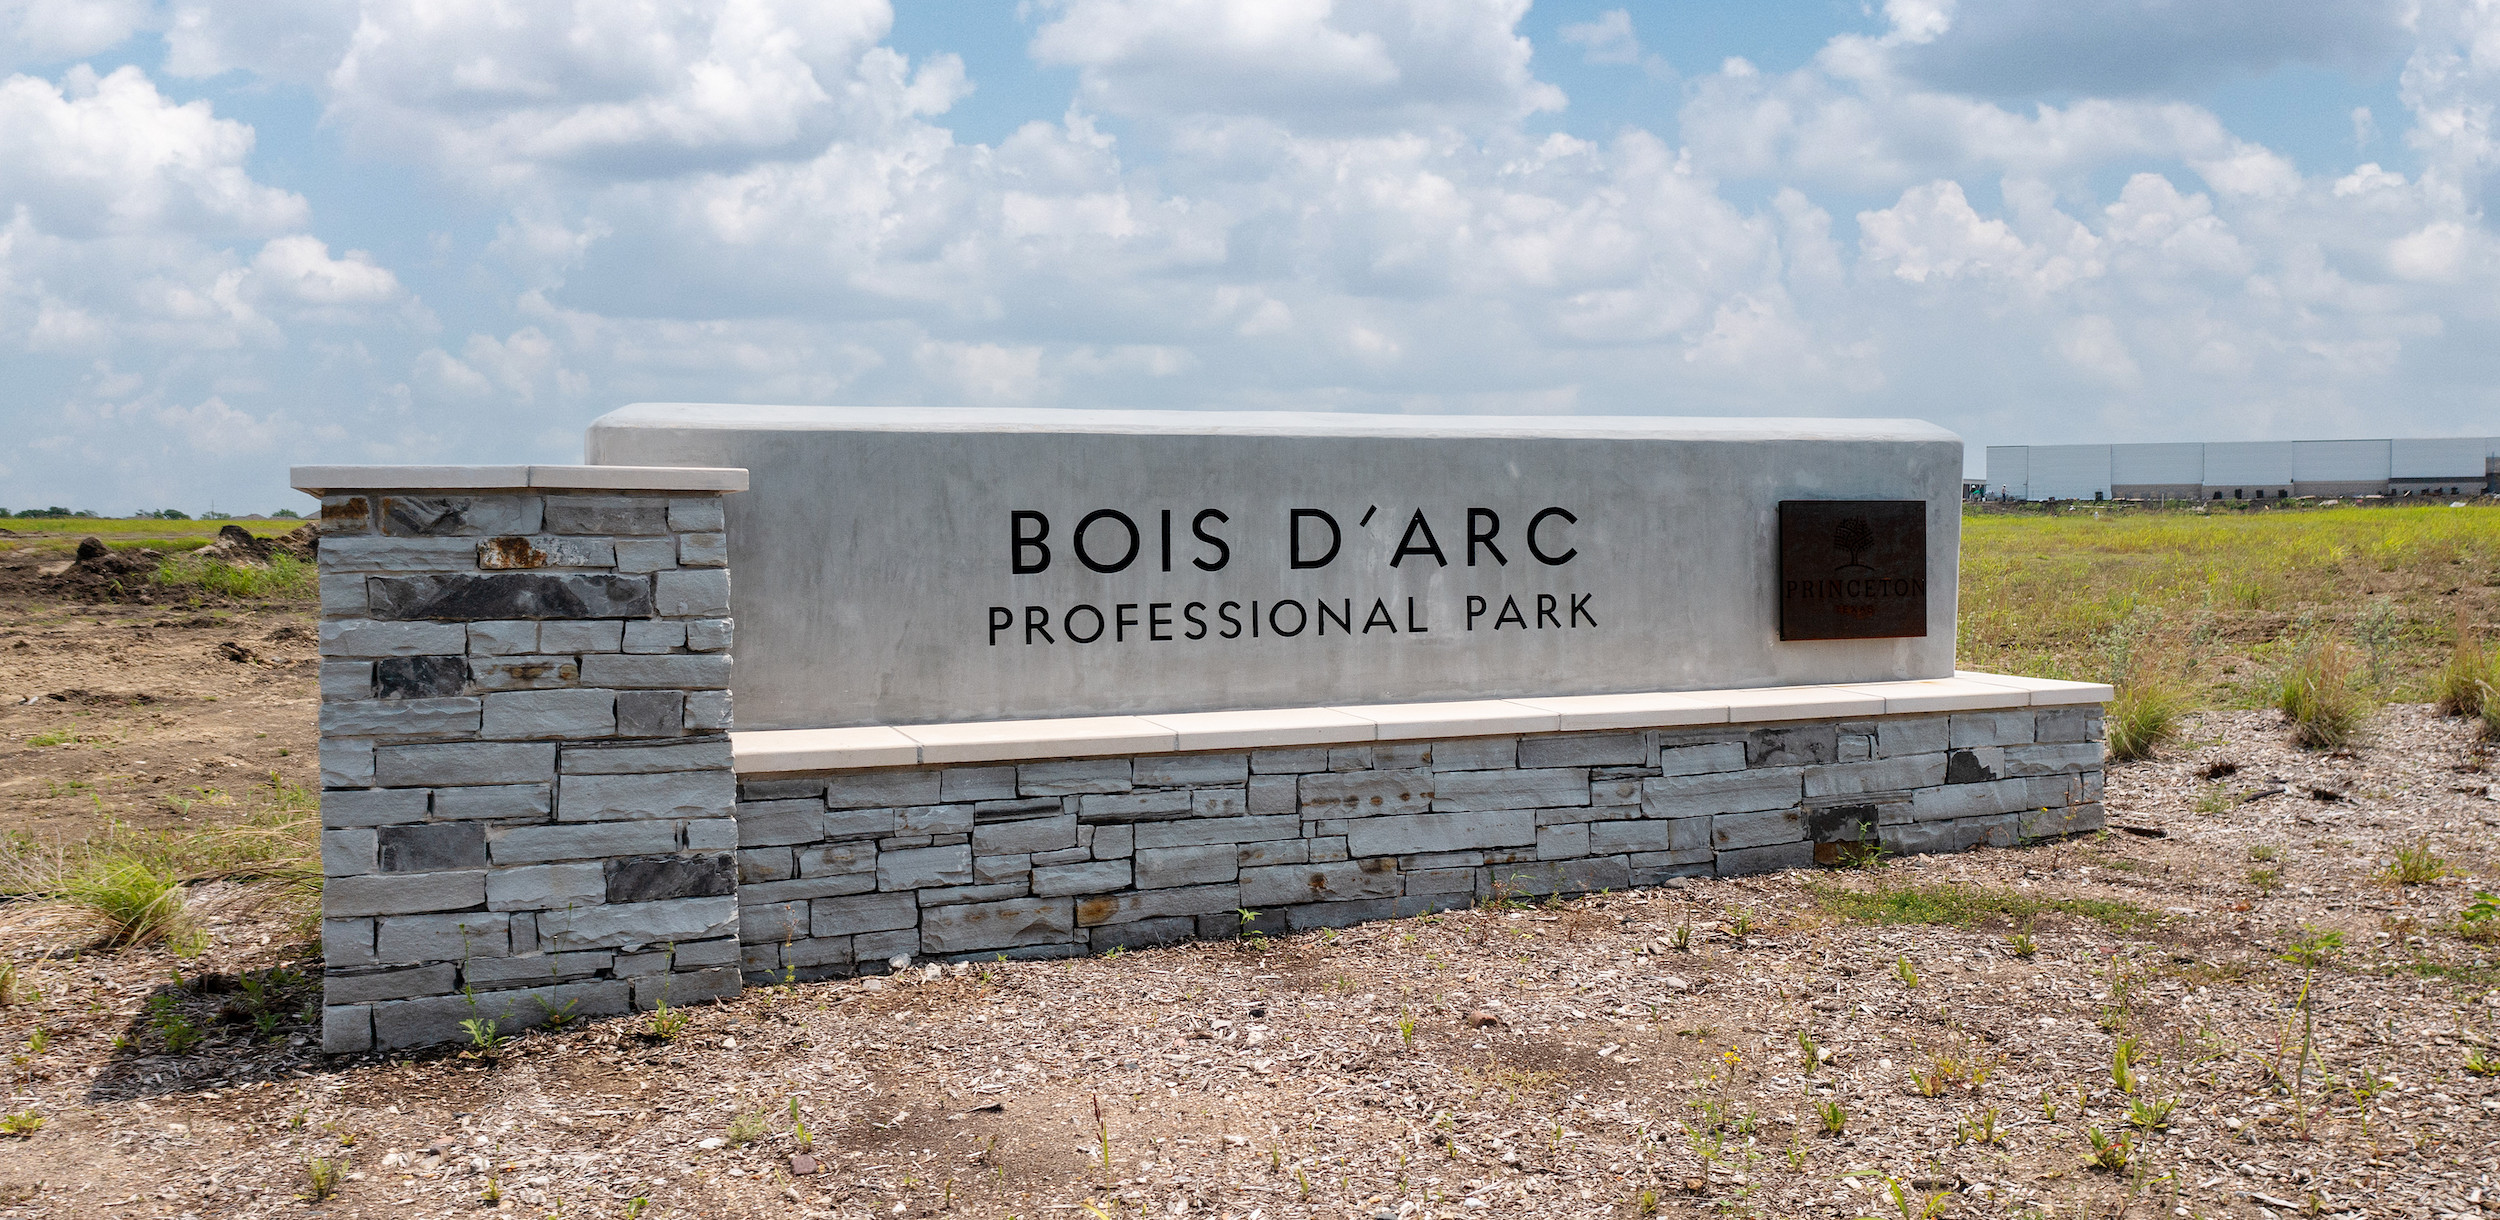 Bois D'Arc professional park sign